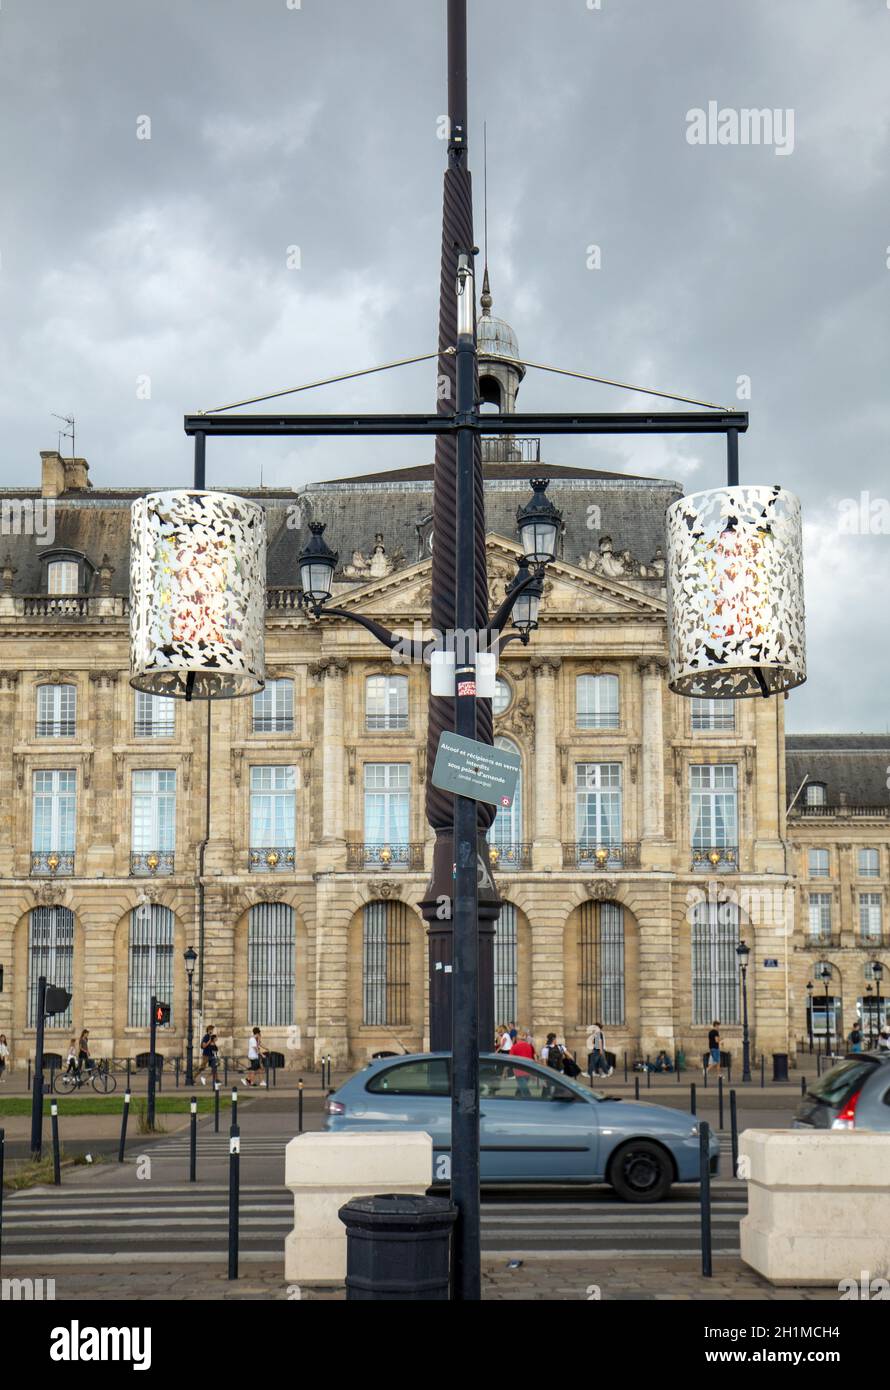 Bordeaux, France - September 9, 2018: Street lamp on Quai de la Douane and Richelieu in  Bordeaux, France Stock Photo